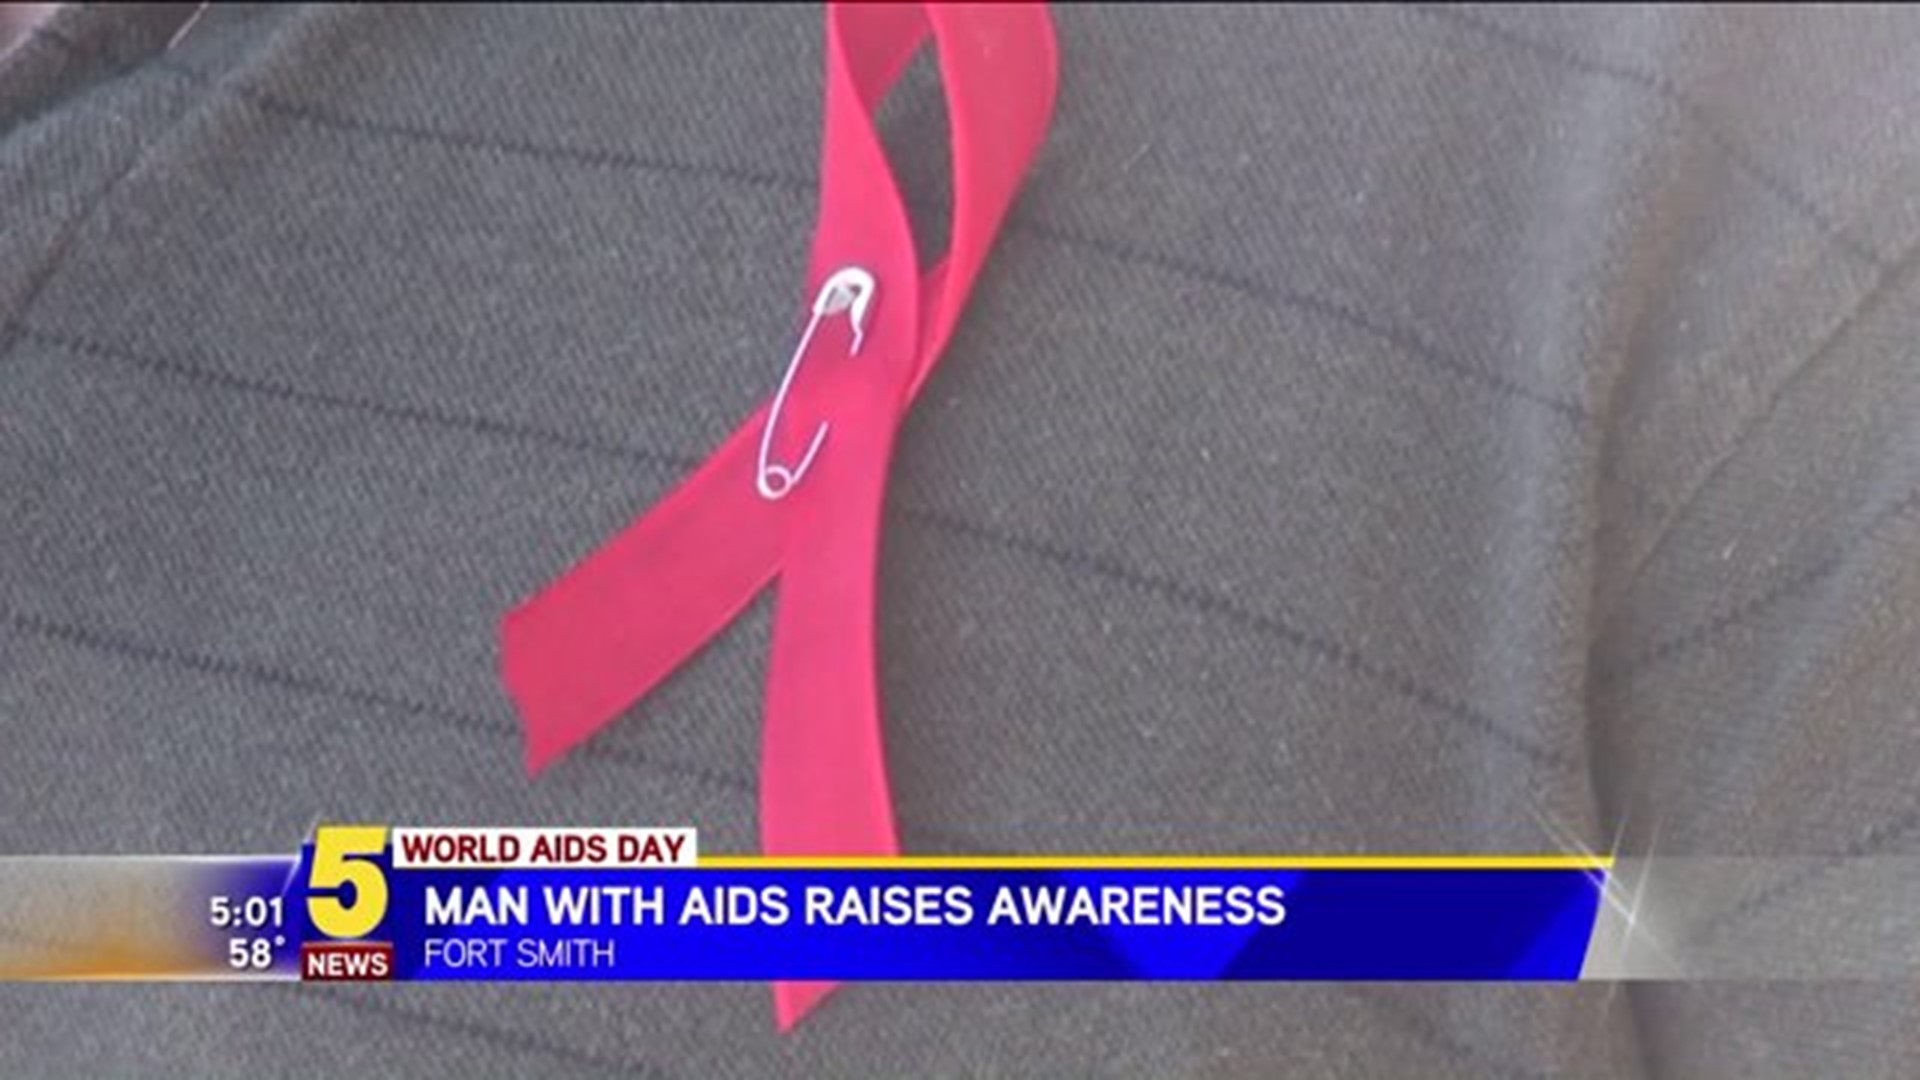 Man With AIDS Raises Awareness